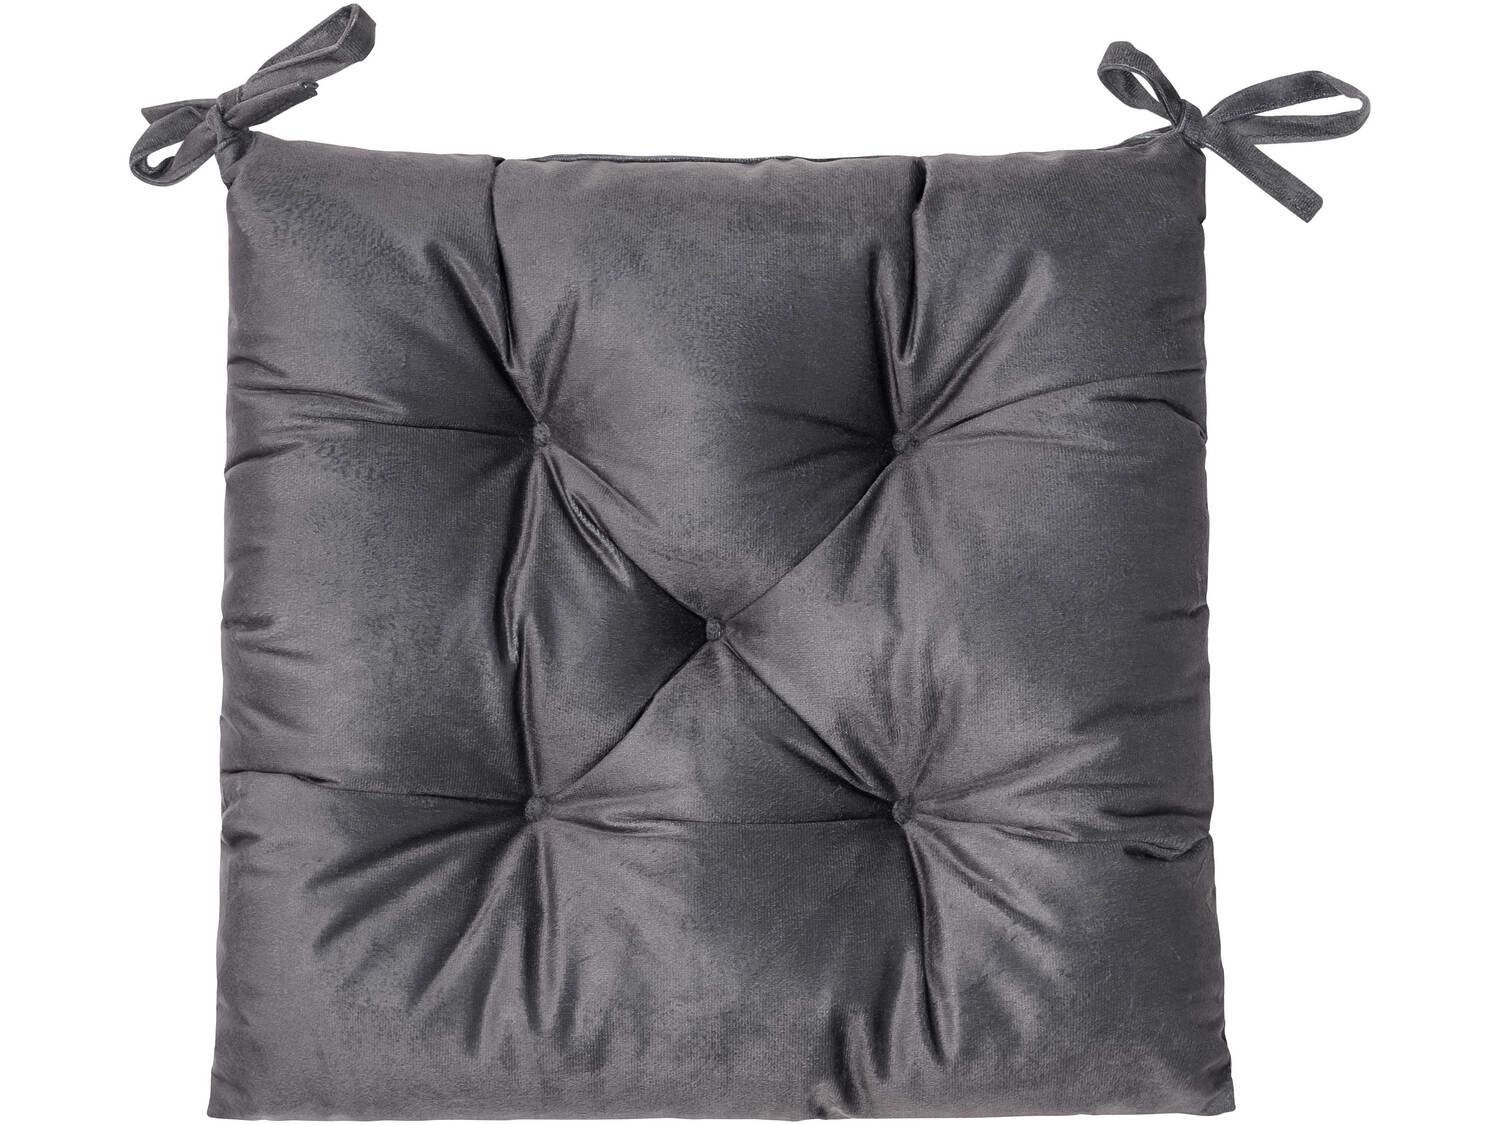 Poduszka na krzesło Meradiso, cena 12,99 PLN 
5 wzorów 
- 40 x 40 cm
- możliwość ...